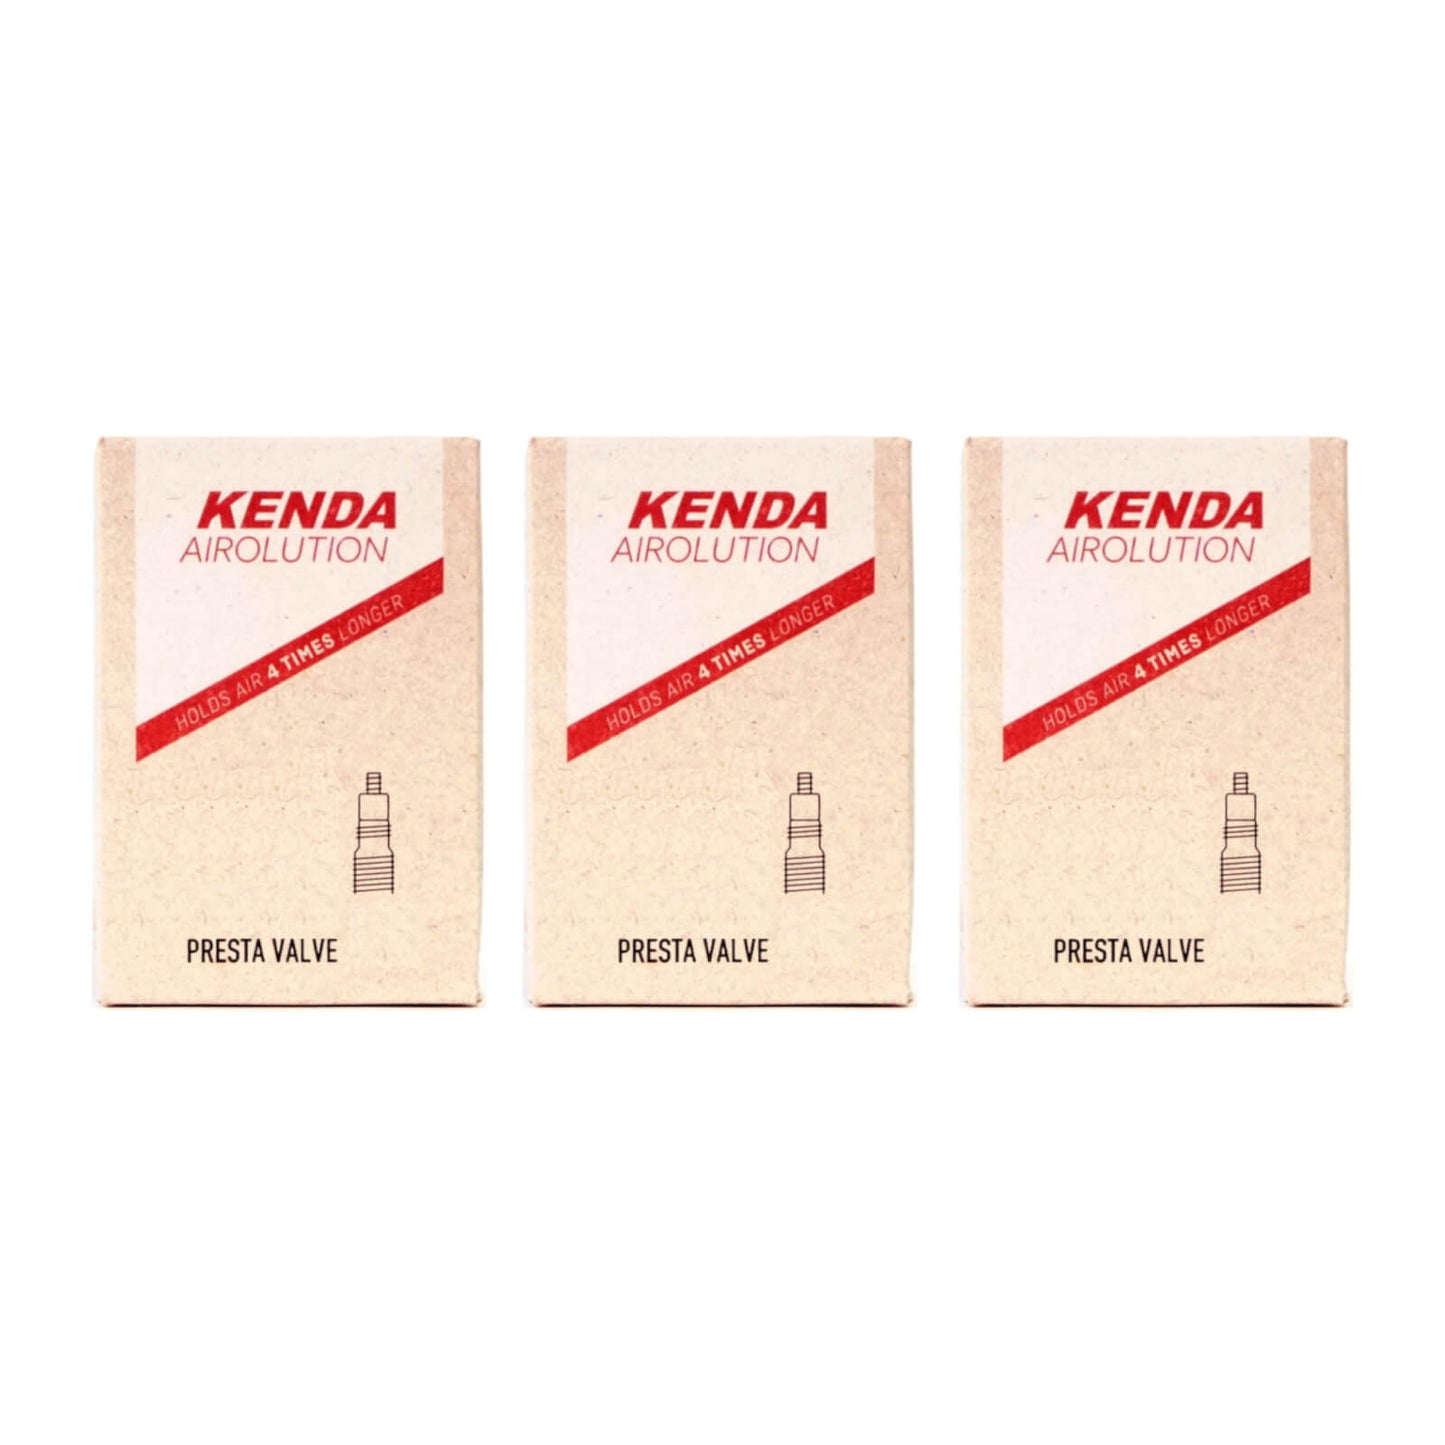 Kenda Airolution 700x30-43c 700c Presta Valve Bike Inner Tube Pack of 3